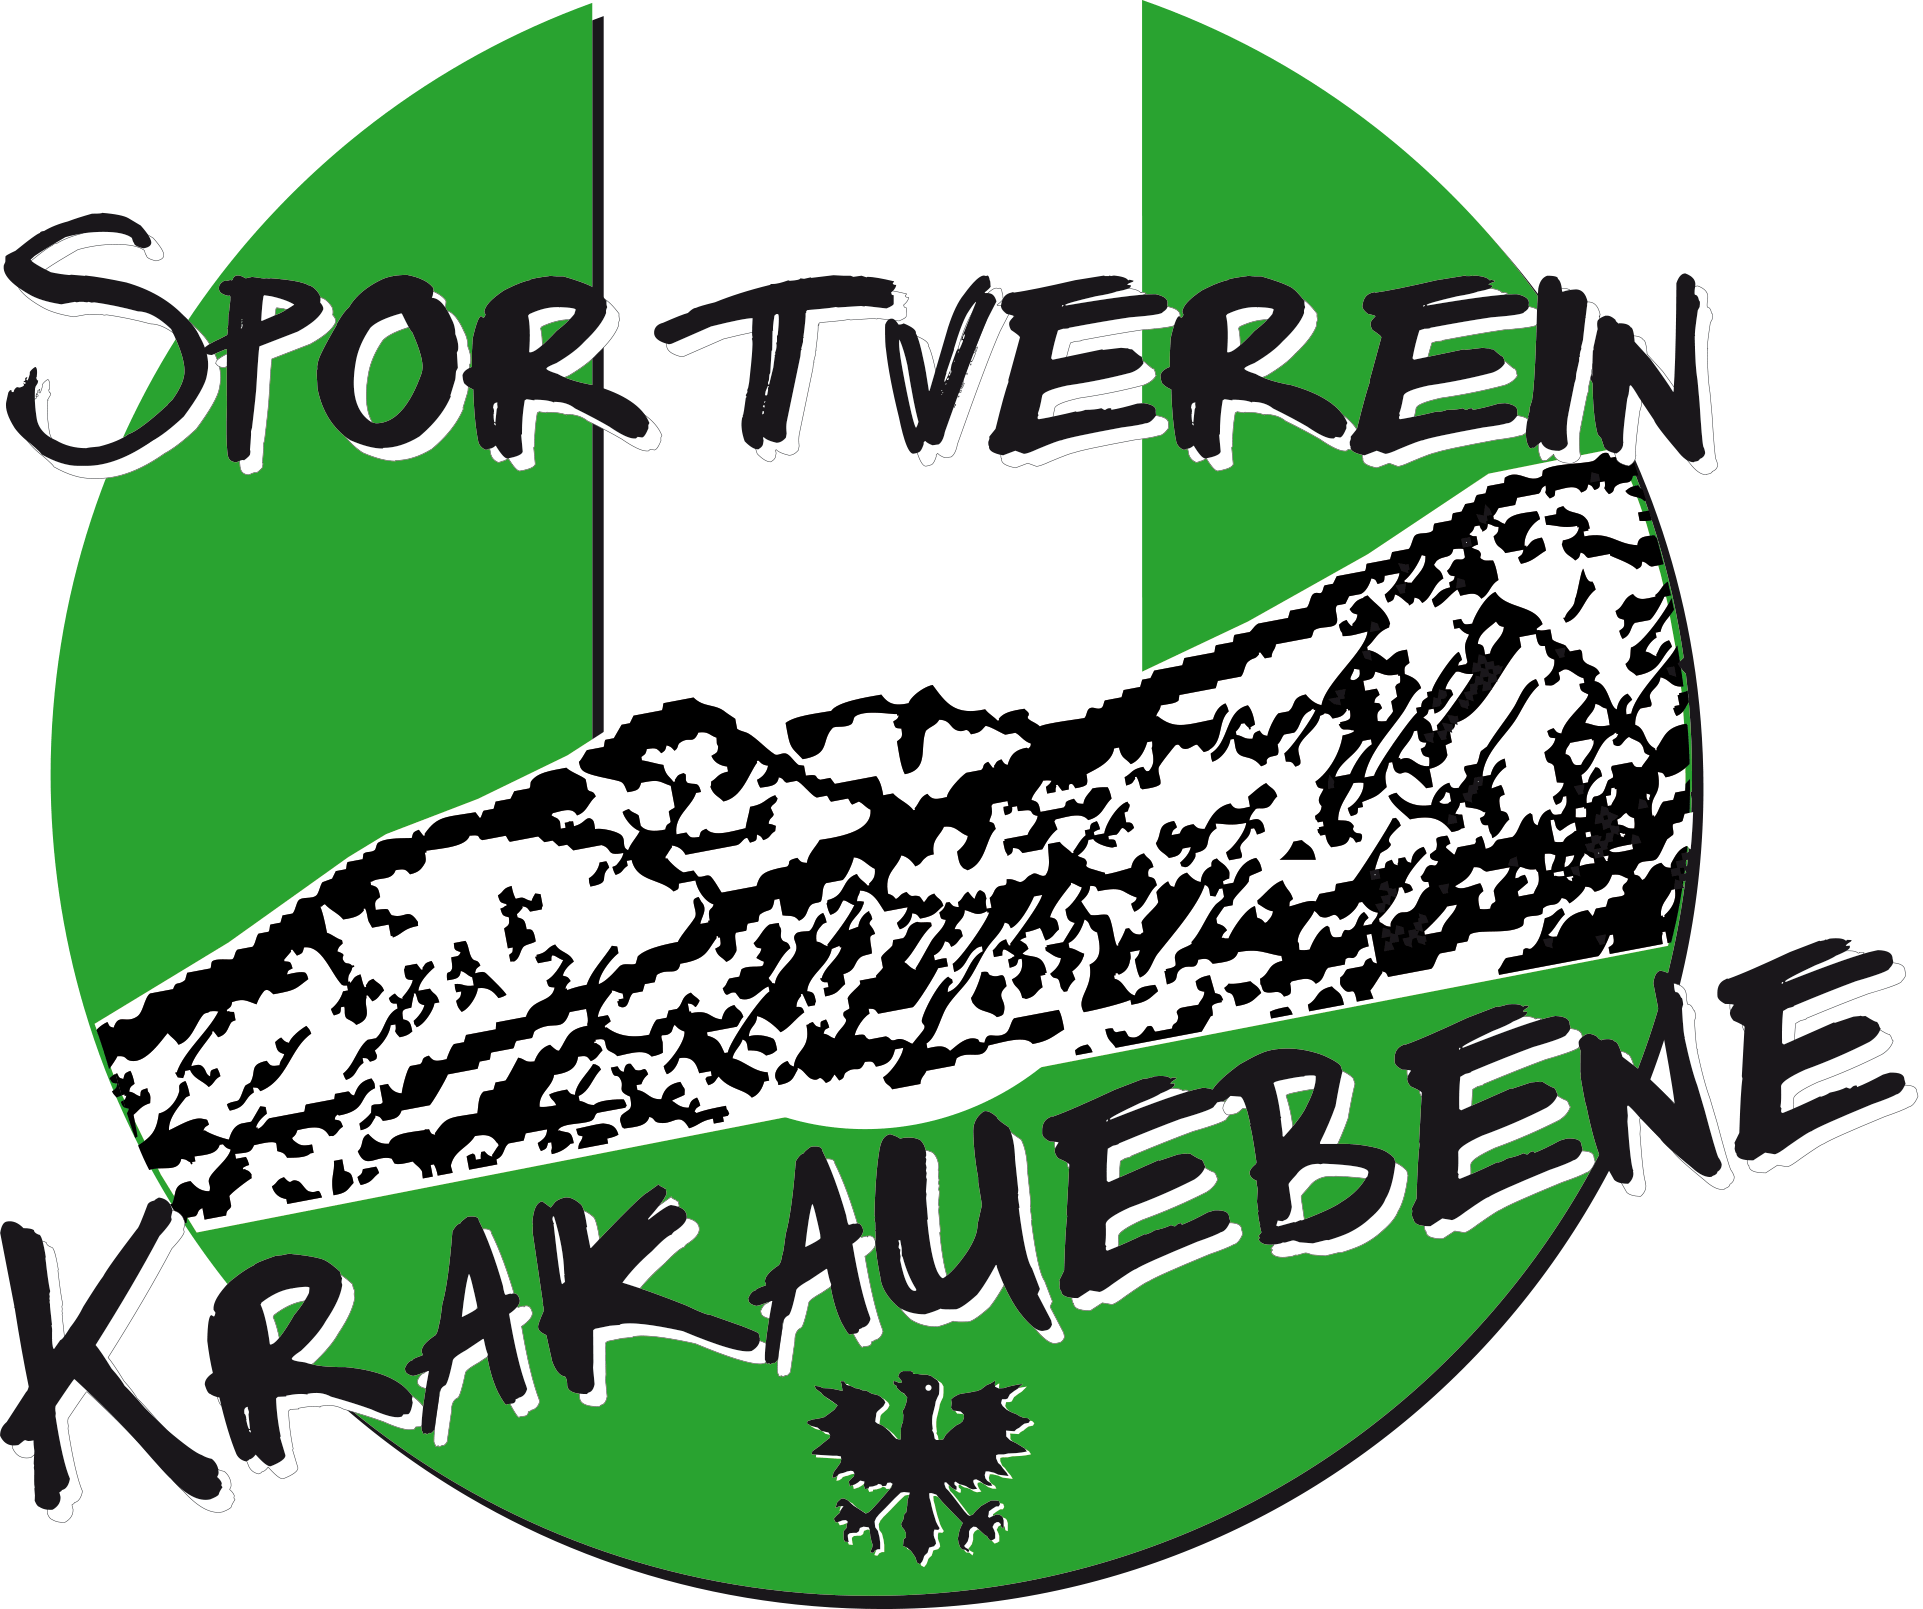 UNION Sportverein Krakauebene